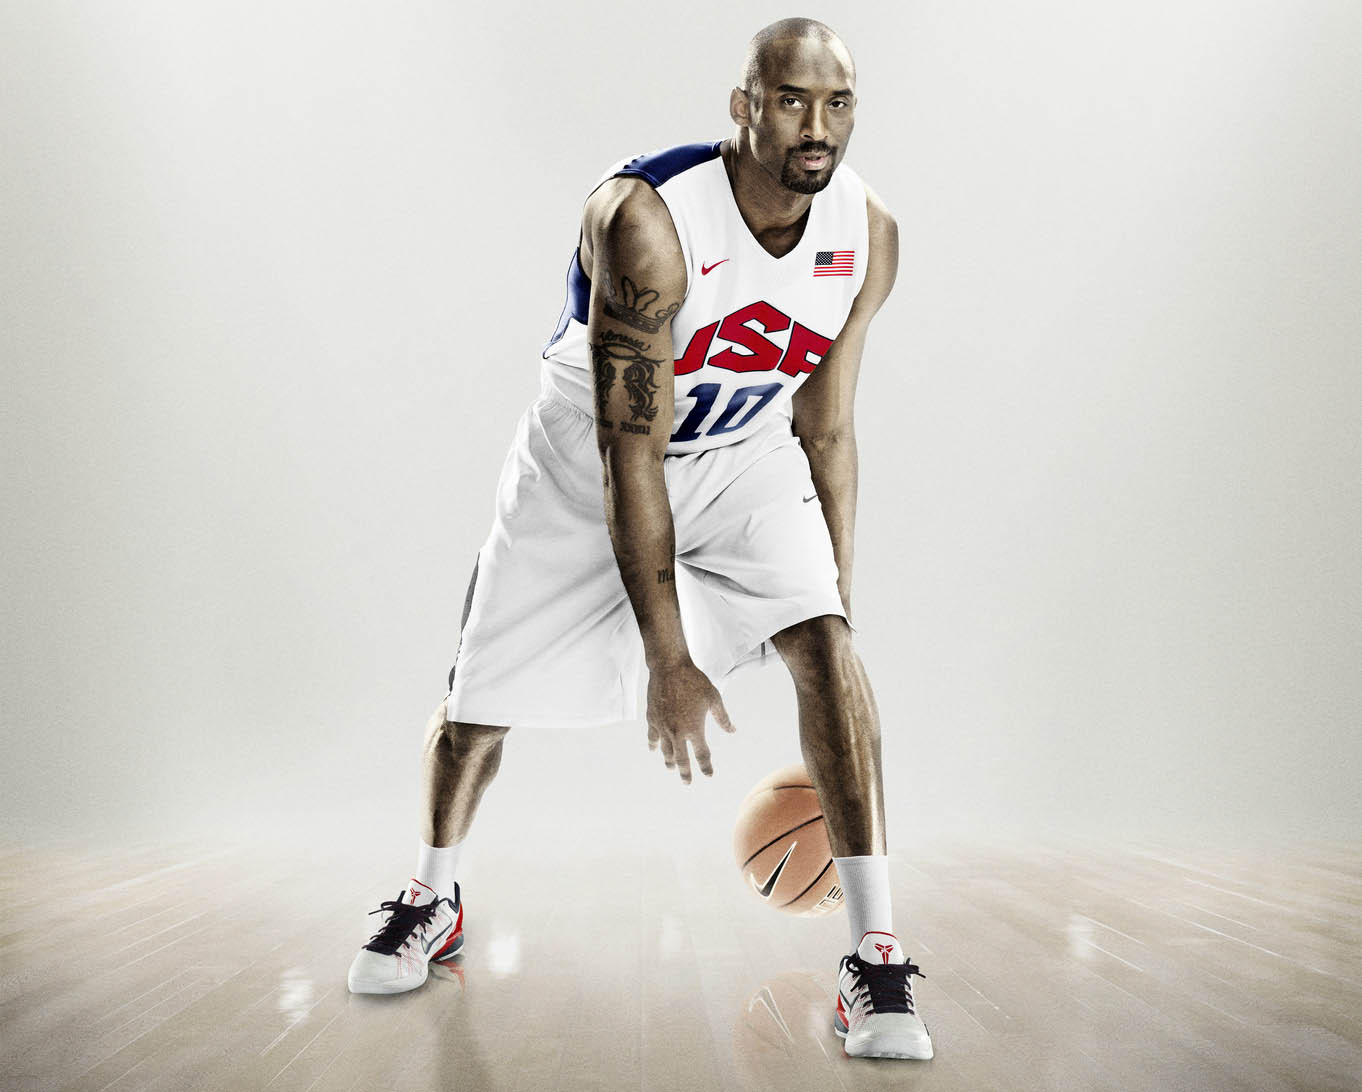 Nike USA Basketball Hyper Elite Uniforms 2012 - Kobe Bryant (3)